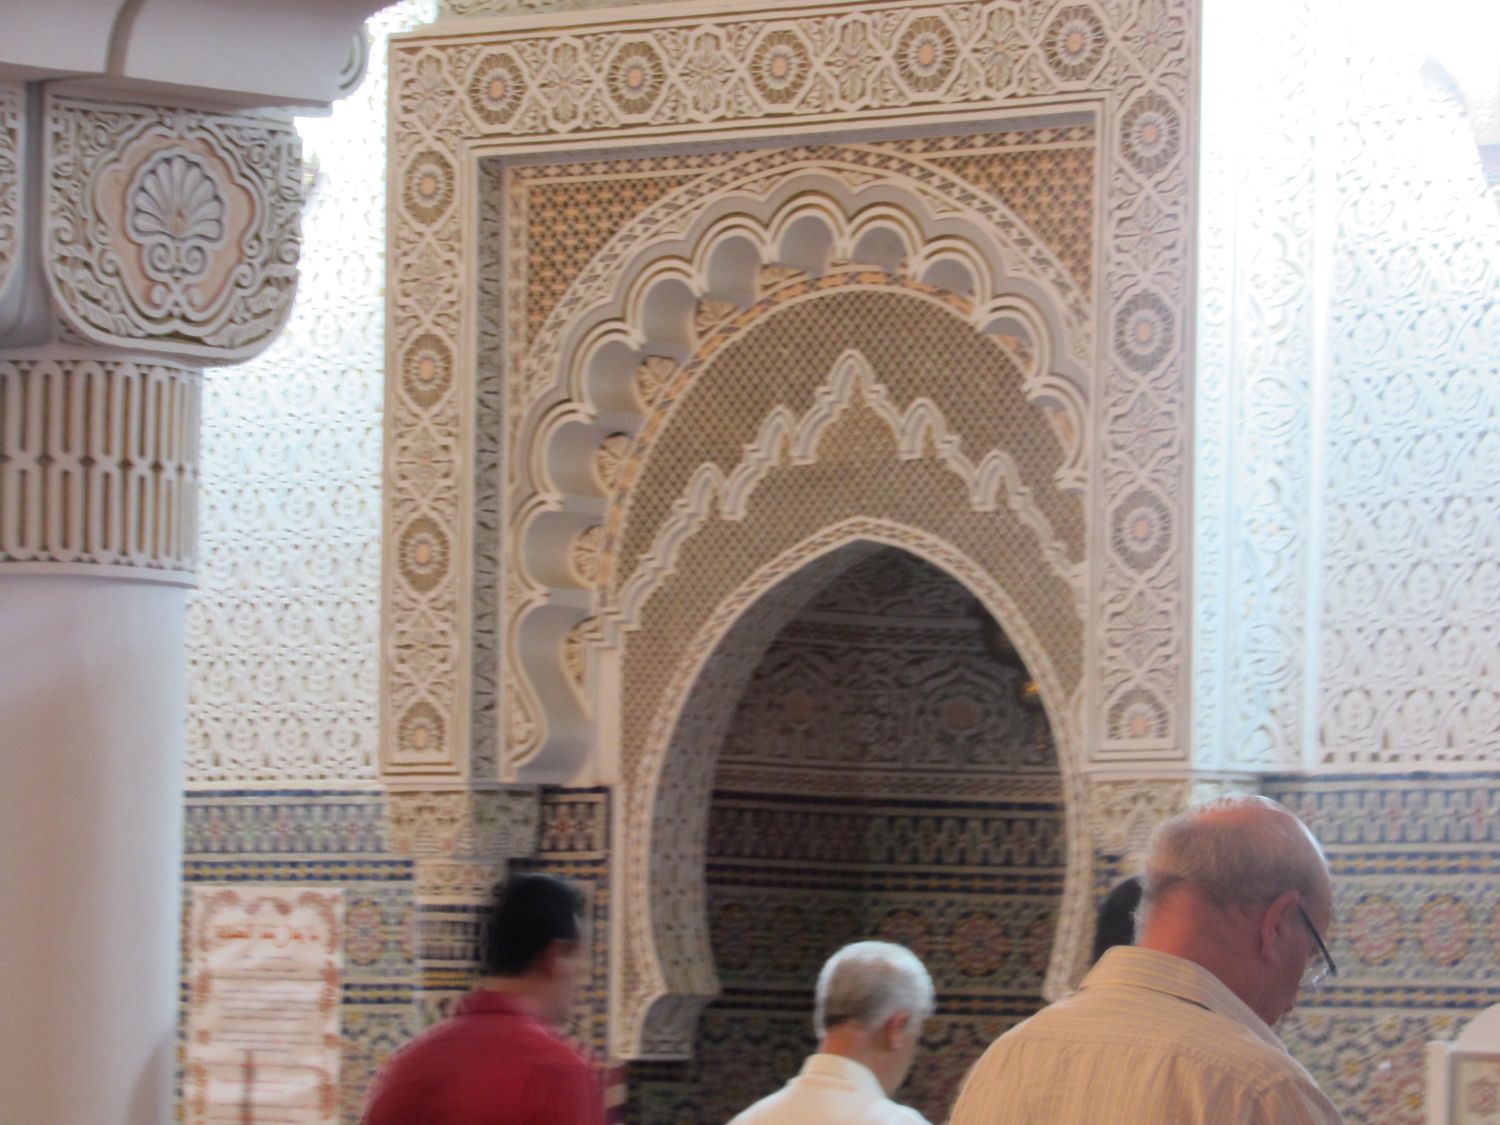 Interior view, mihrab and qibla wall.